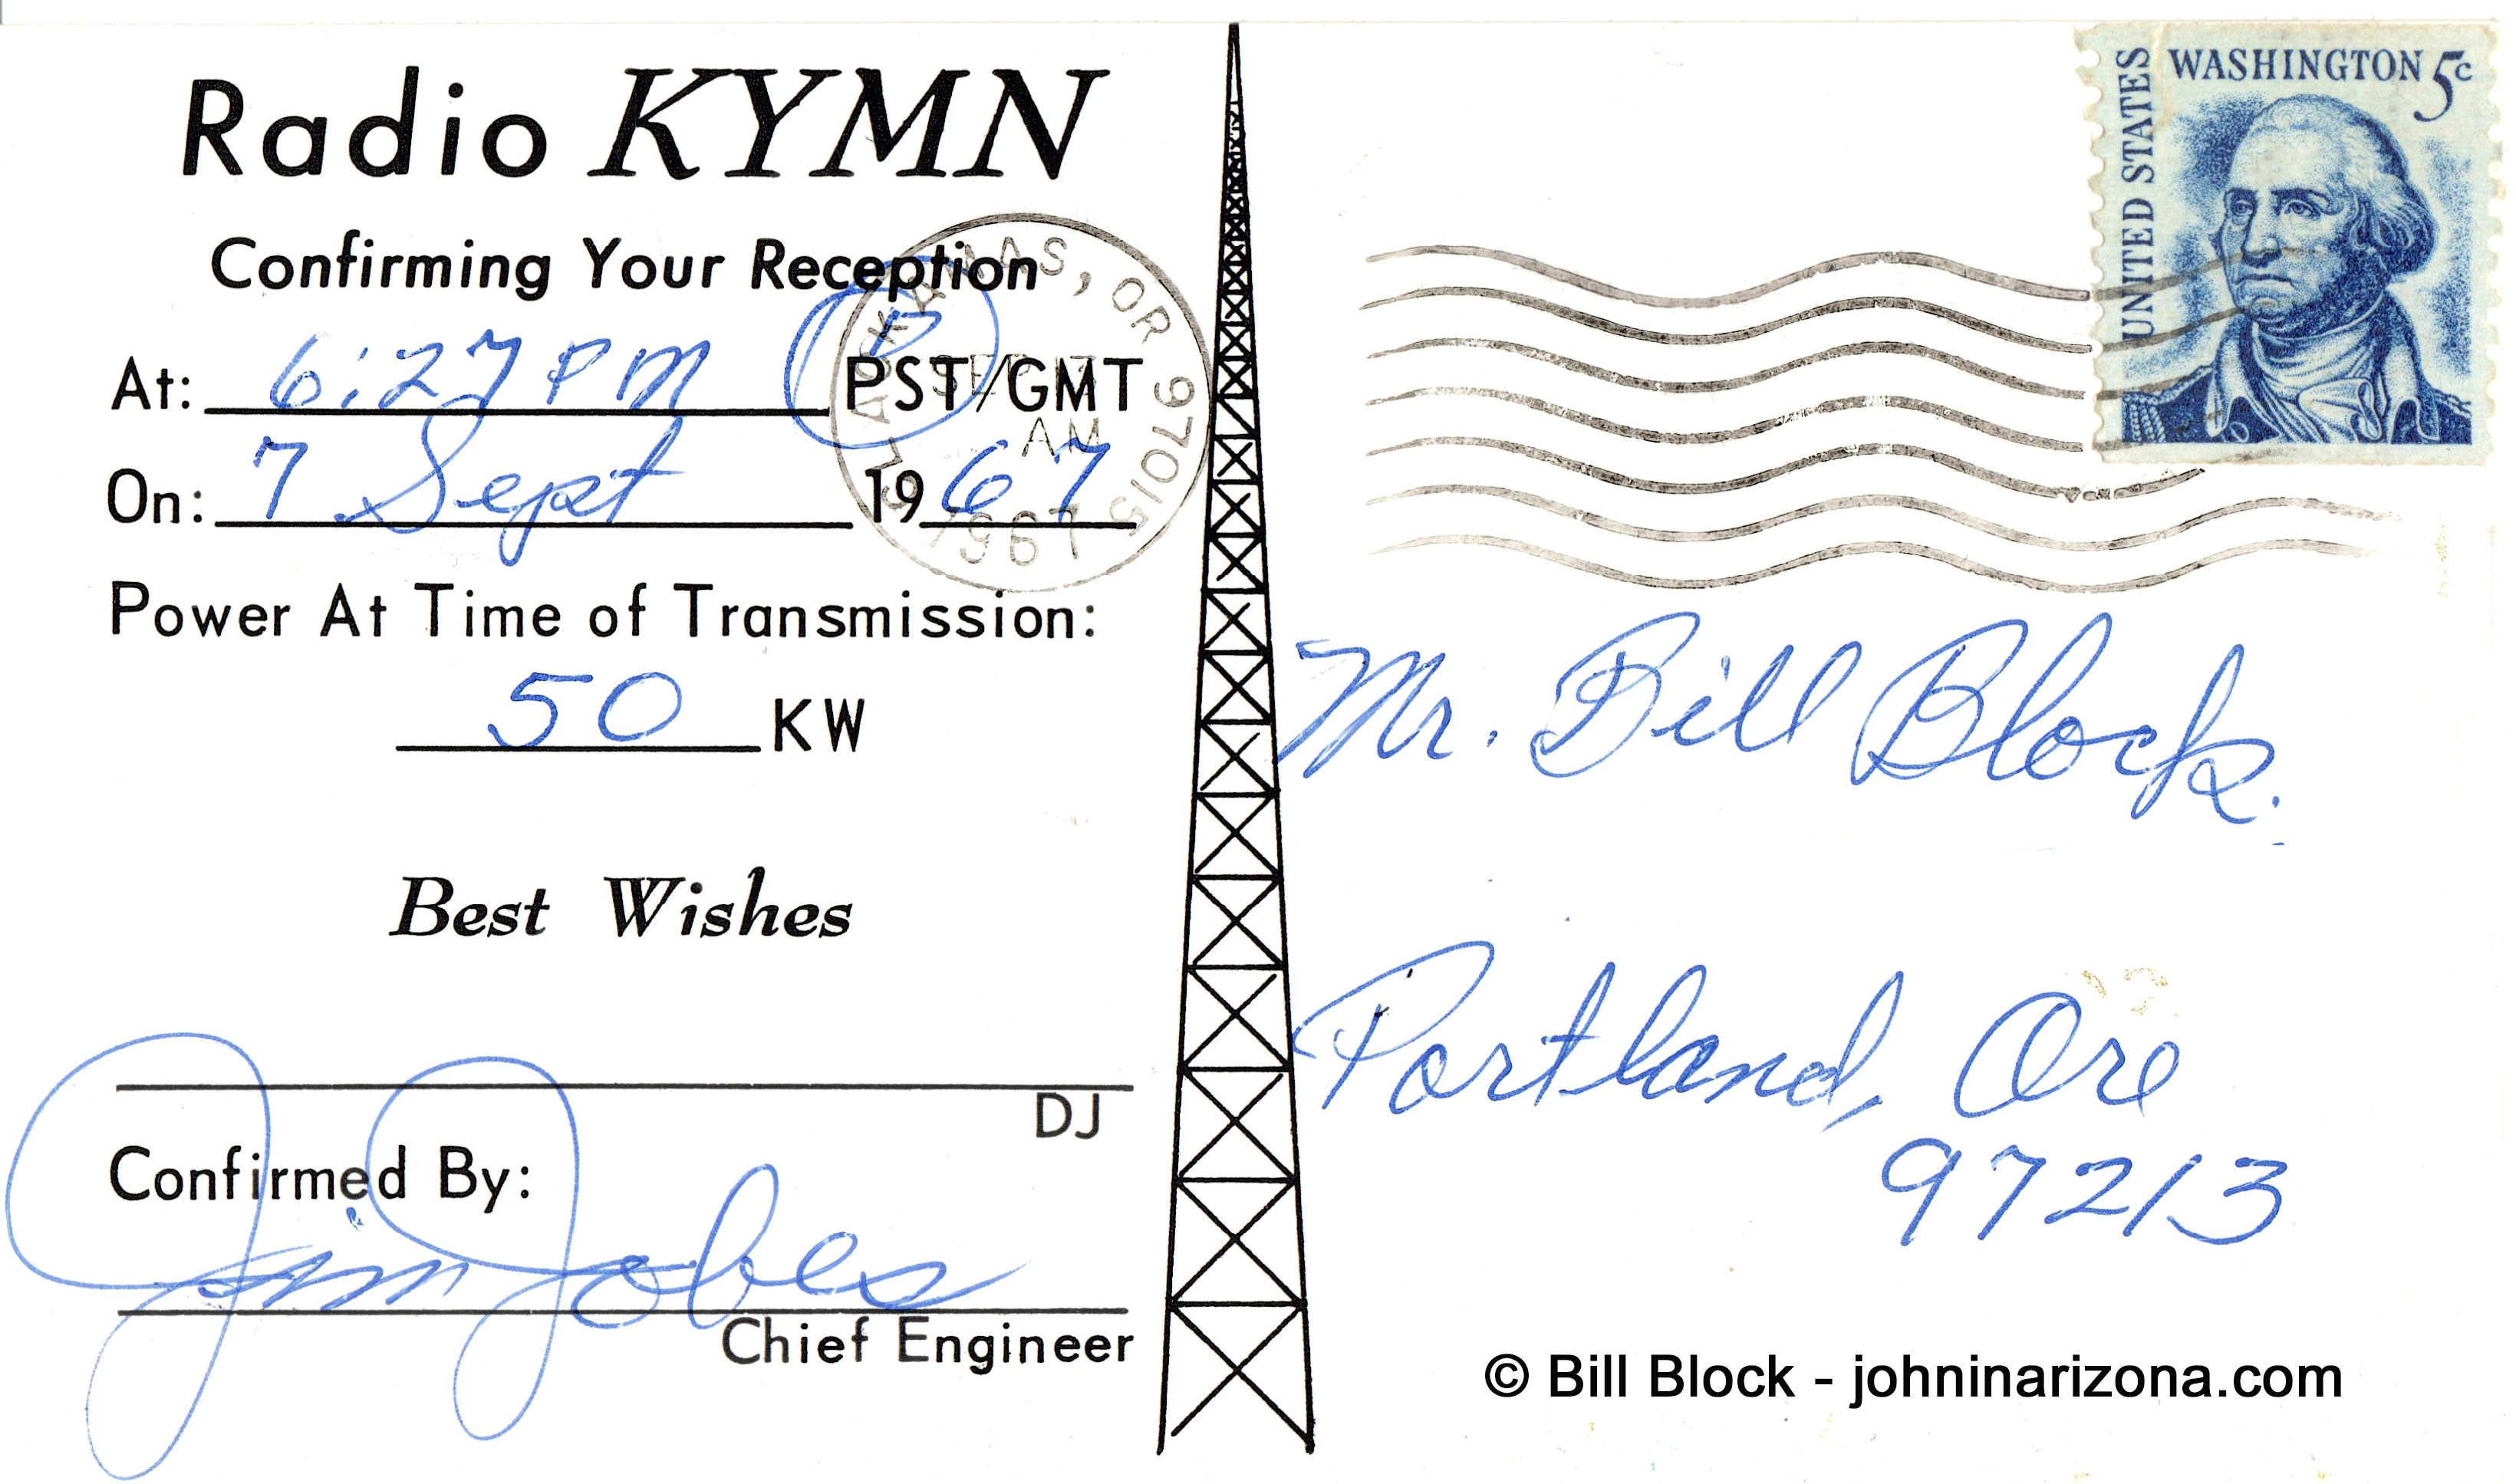 KYMN Radio 1520 Oregon City, Oregon